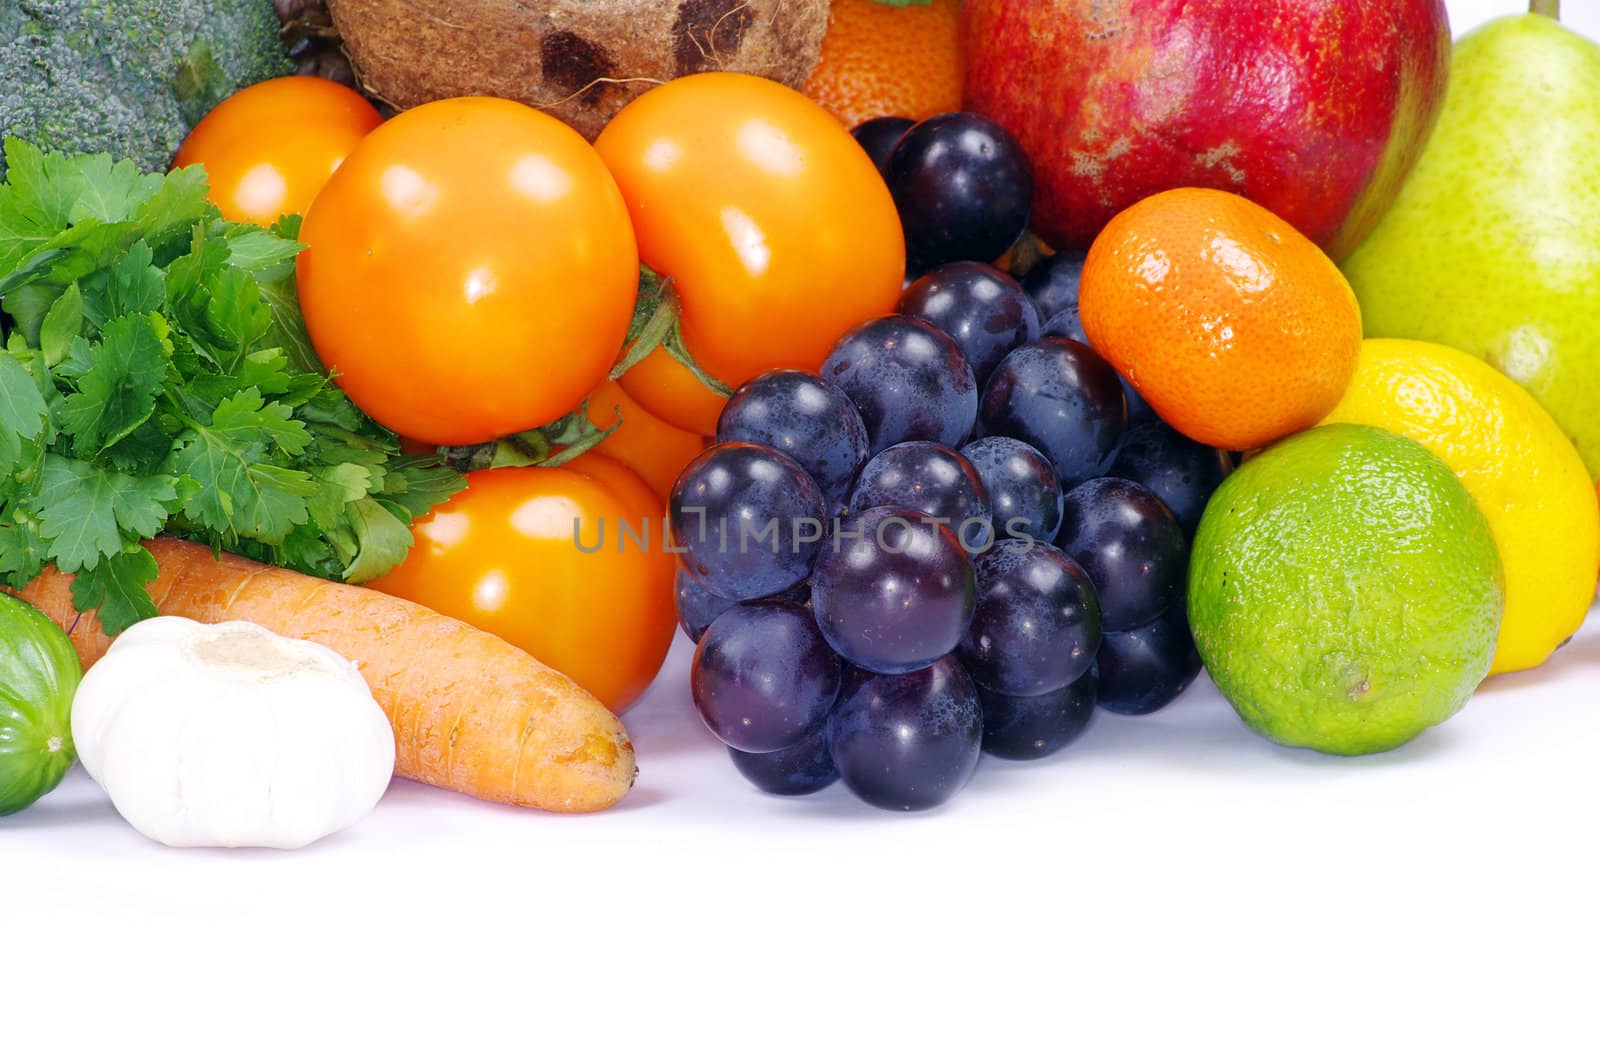 fruits and vegetables  by Pakhnyushchyy